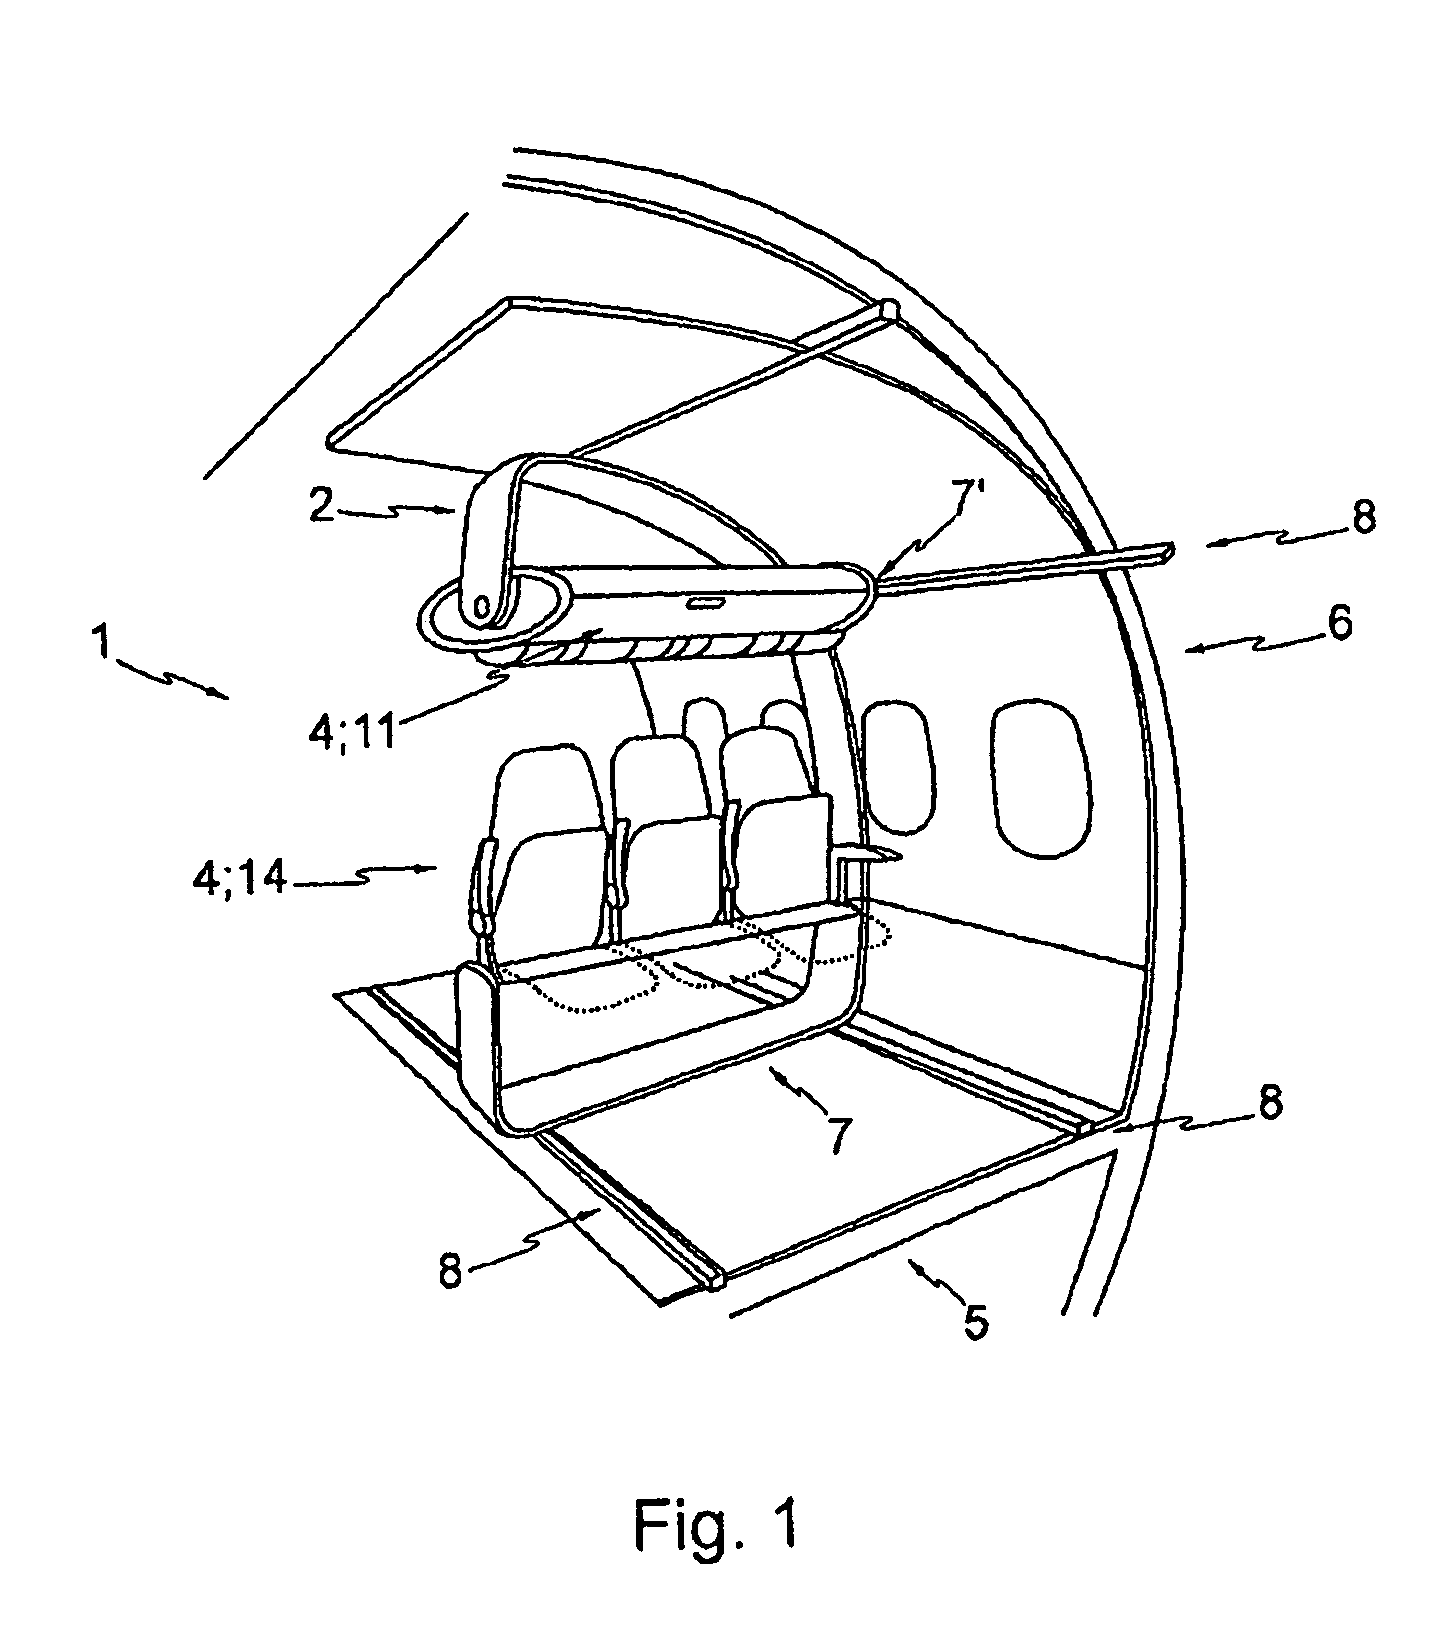 Module for an aircraft